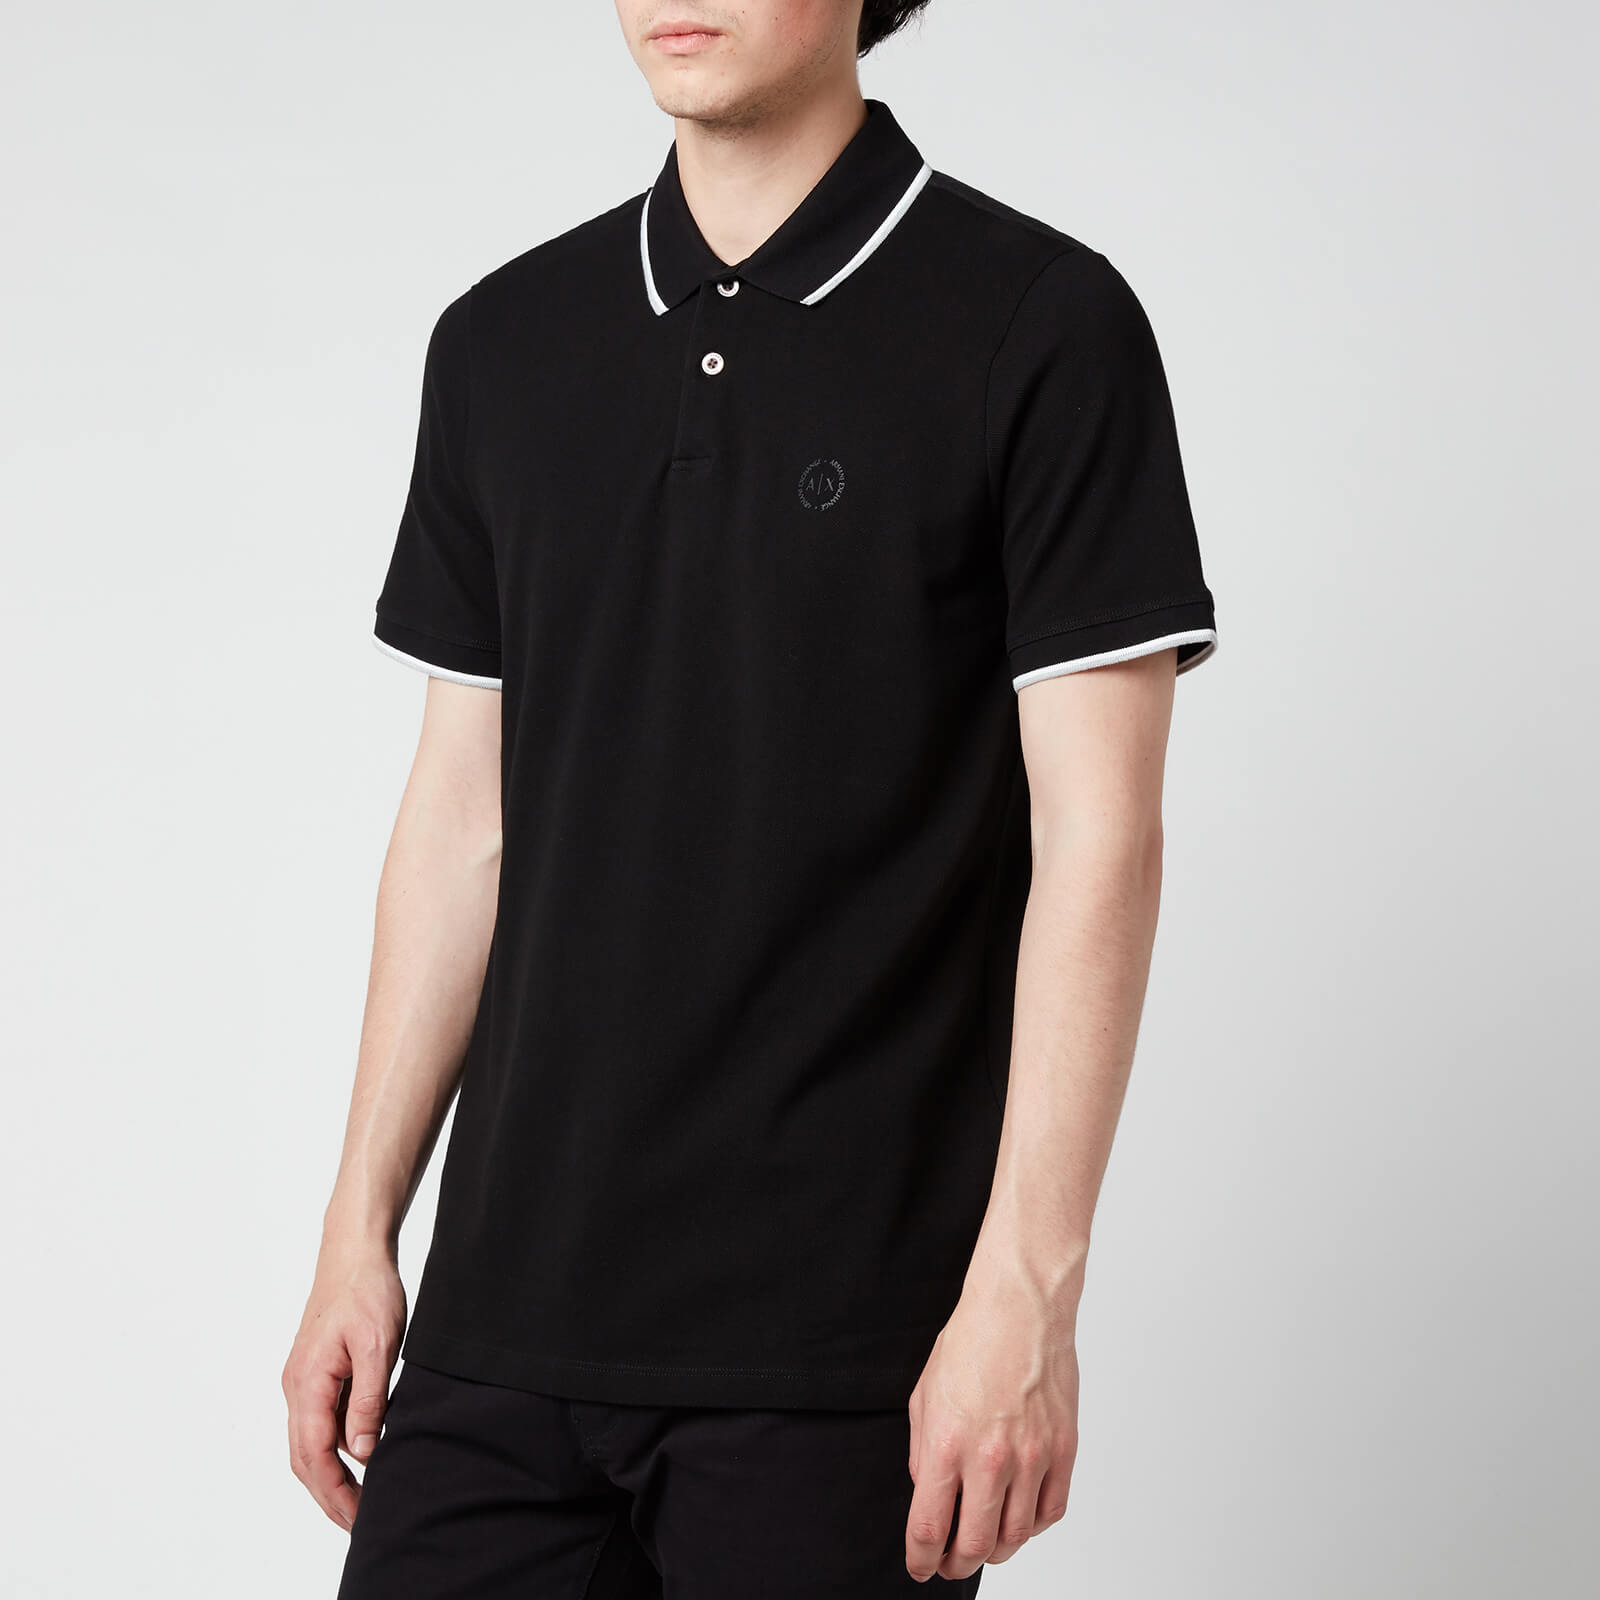 Armani Exchange Men's Tipped Polo Shirt - Black - S